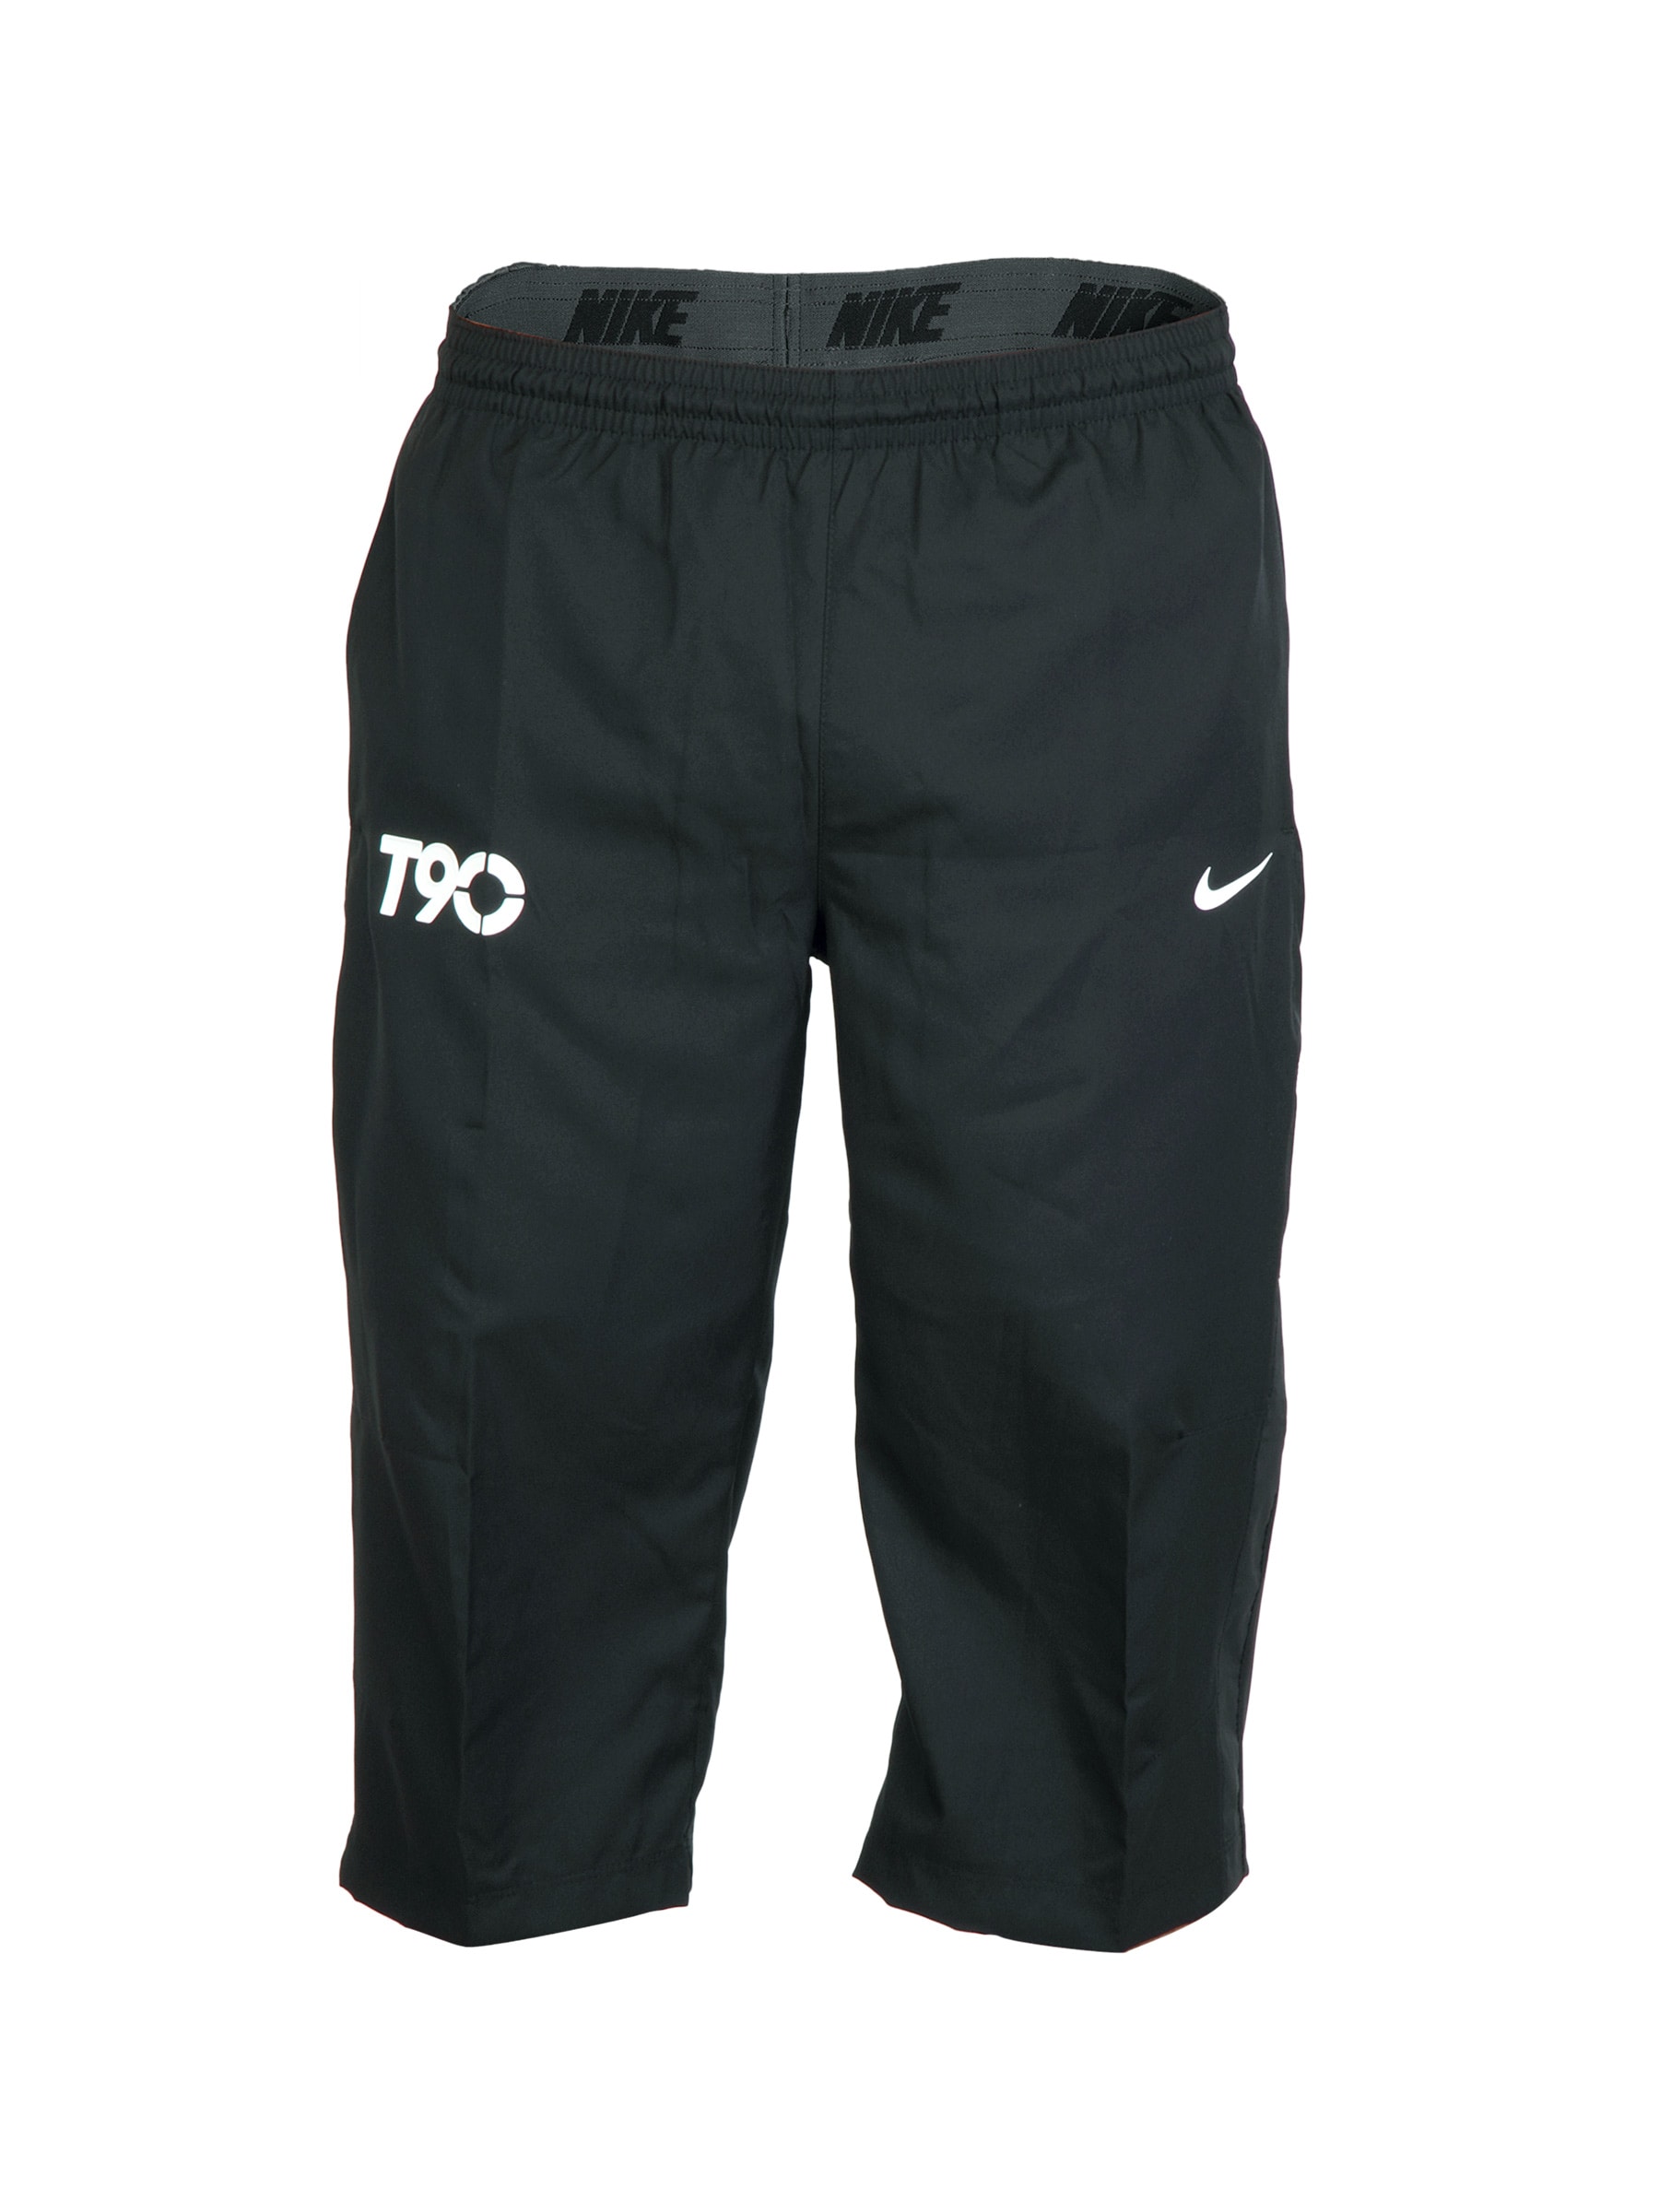 Nike Men T90 Black Shorts